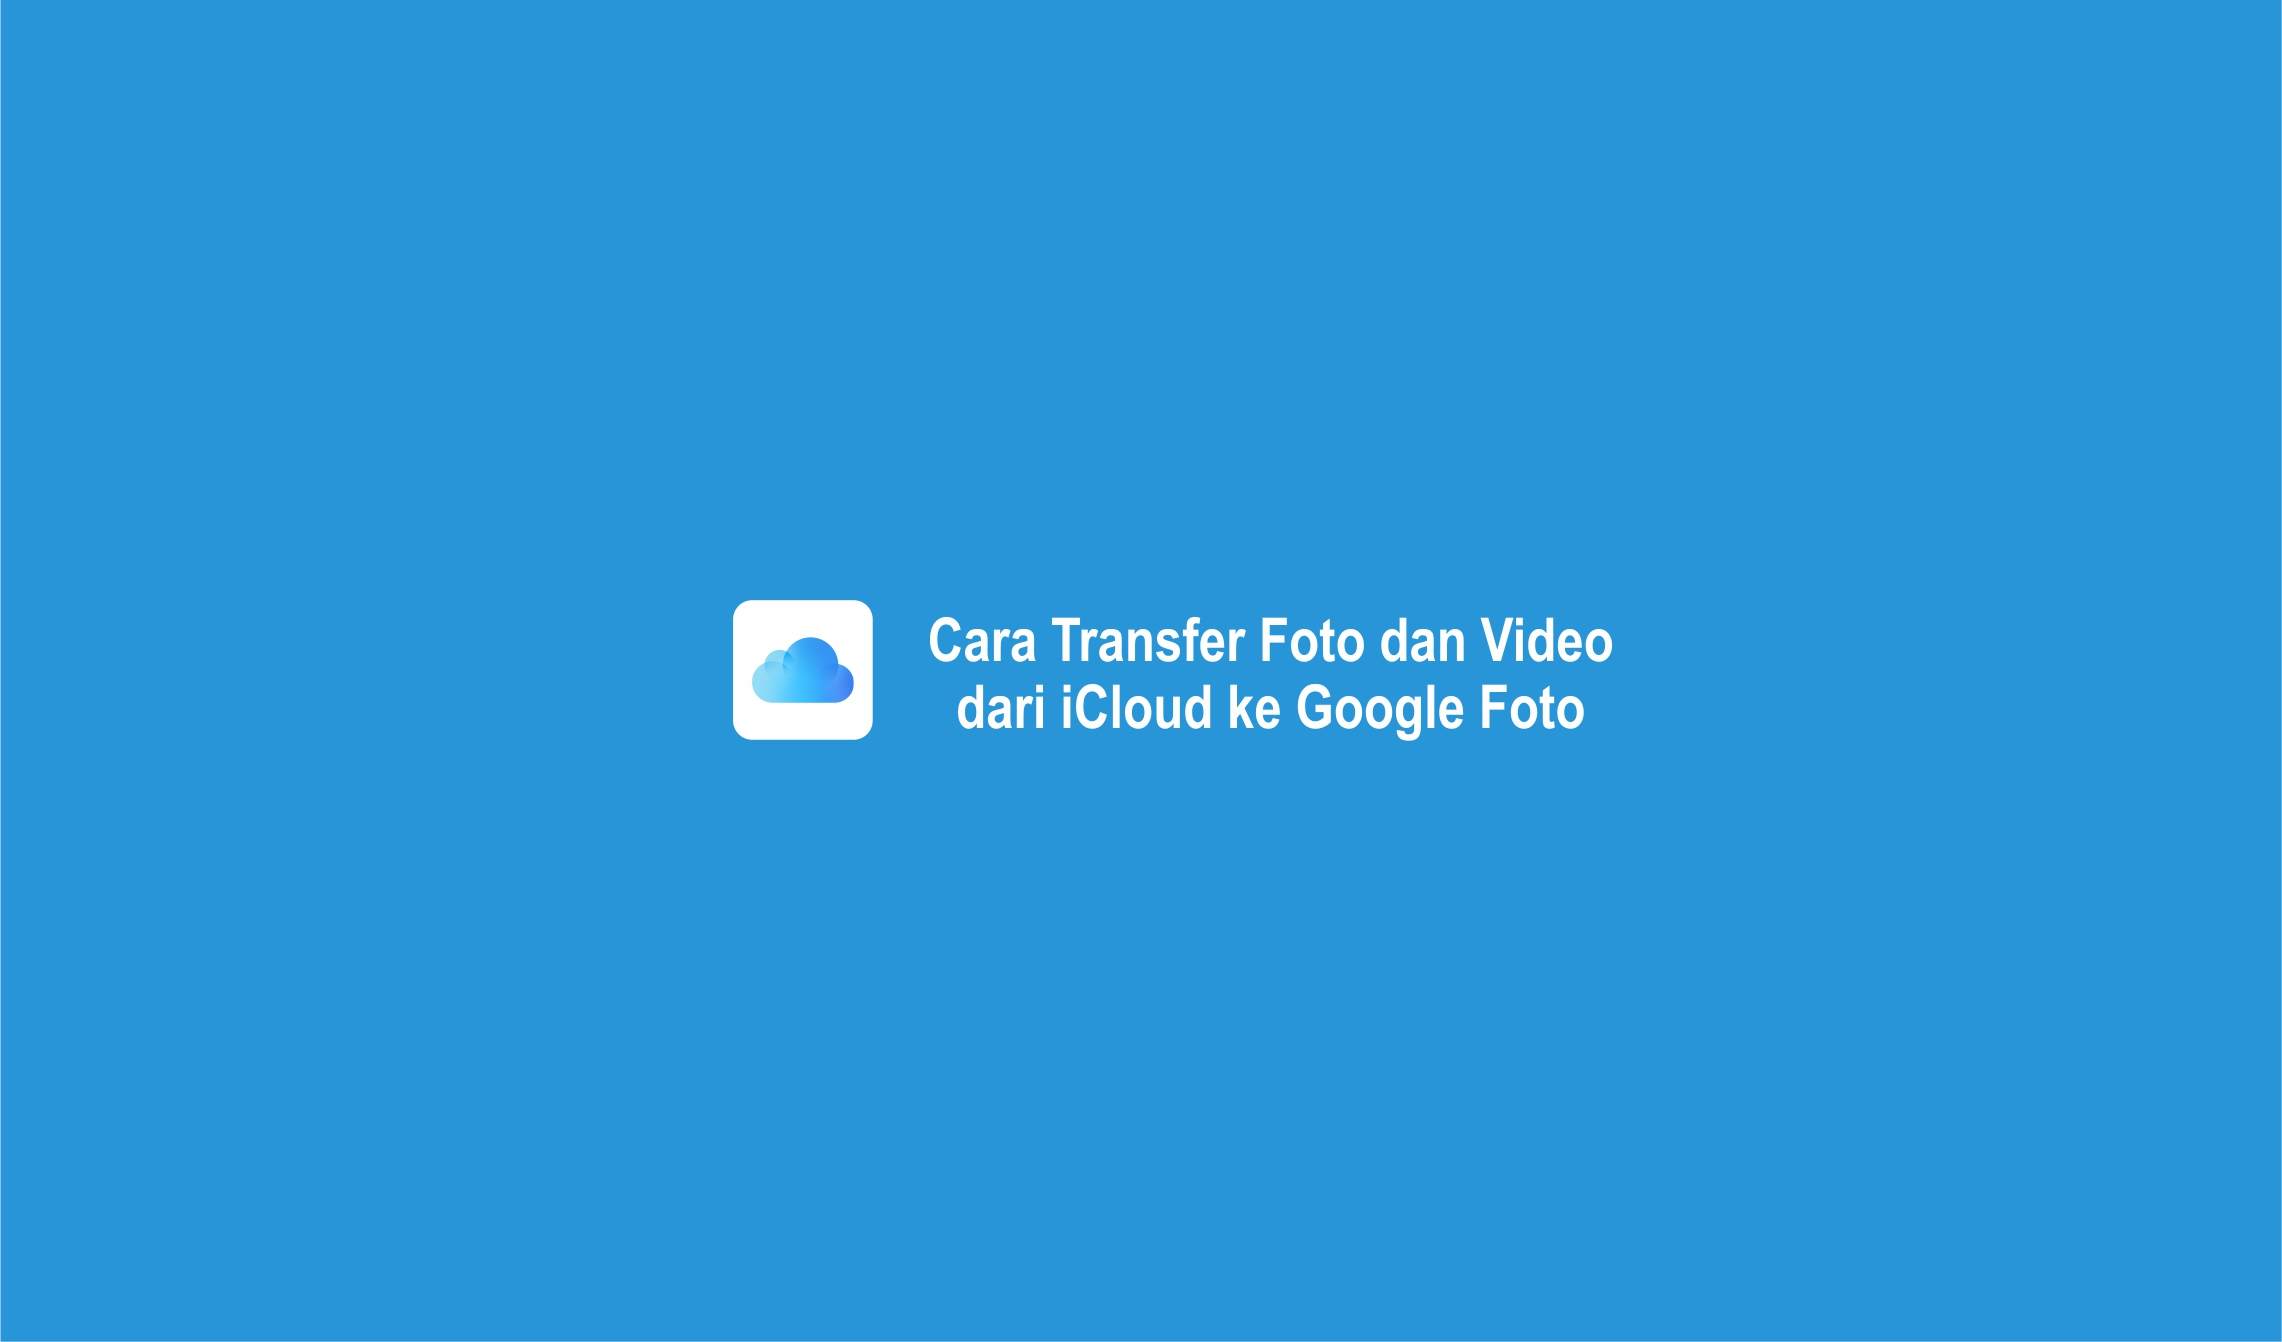 Cara Transfer Foto dan Video dari iCloud ke Google Foto-compressed